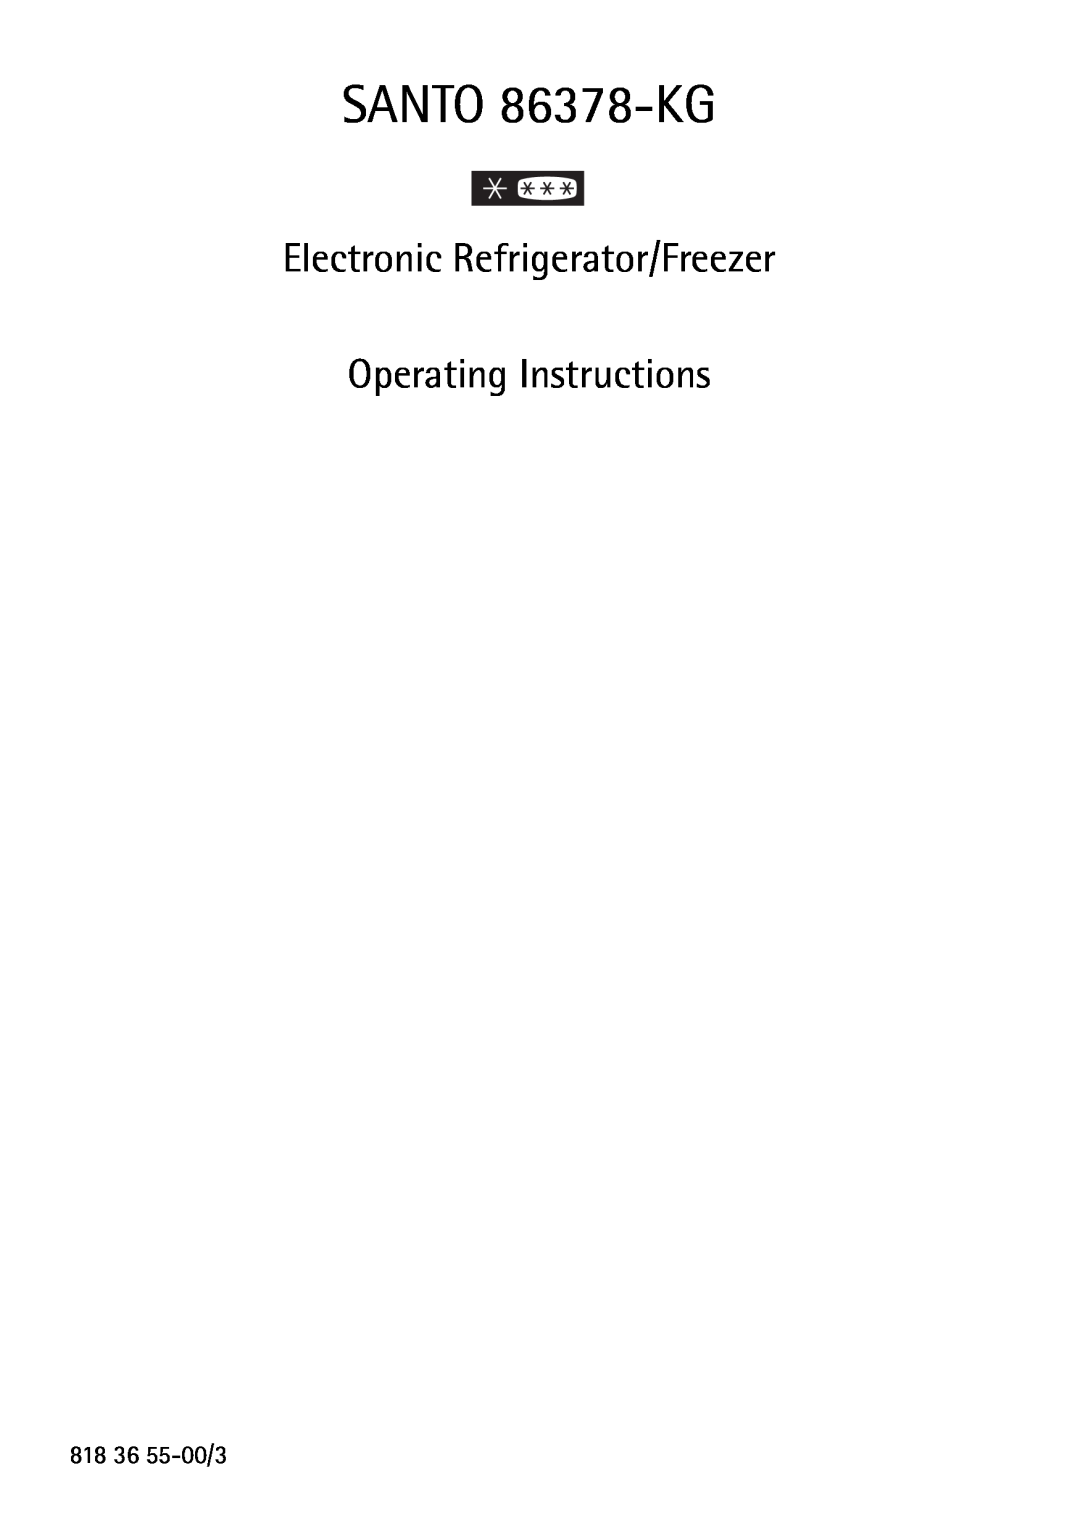 AEG operating instructions SANTO 86378-KG, Electronic Refrigerator/Freezer Operating Instructions 